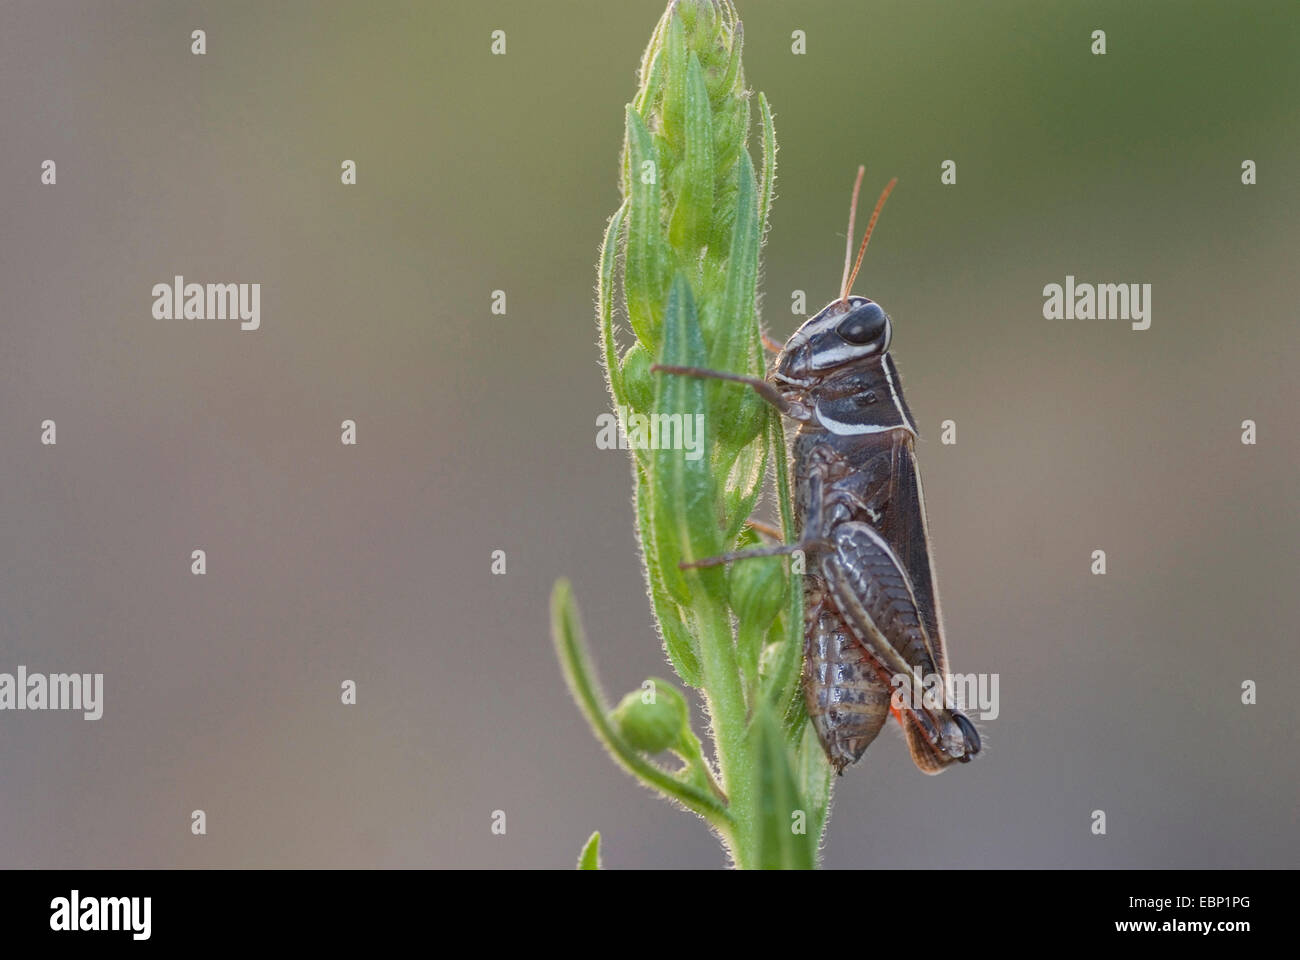 Locust (Calliptamus, SPEC), sur une inflorescence en herbe, France, Corse Banque D'Images